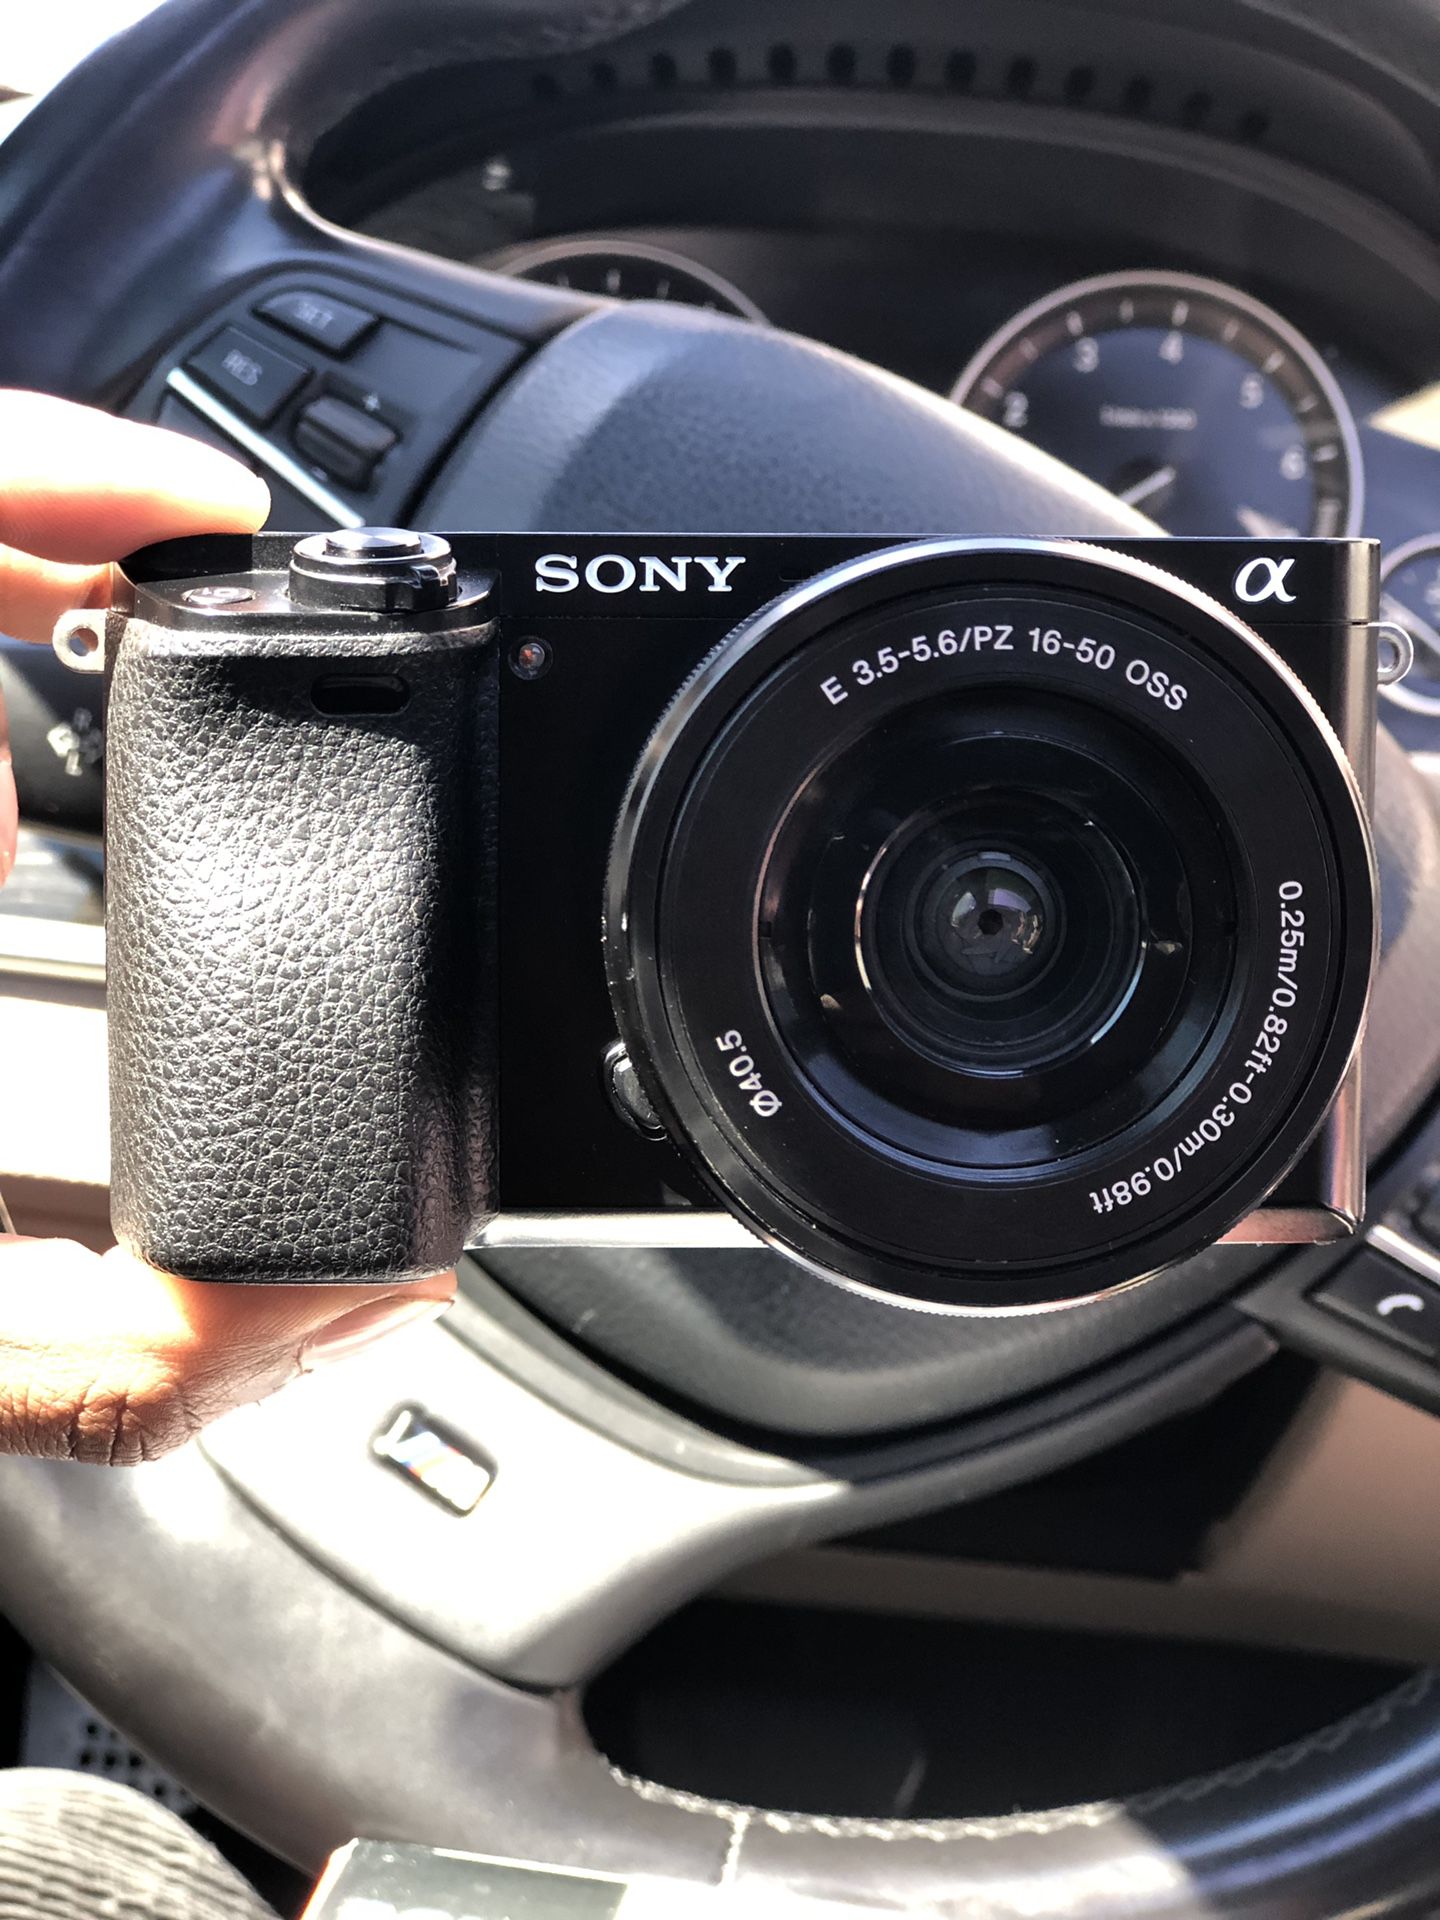 Sony A6000 Mirror Less Camera